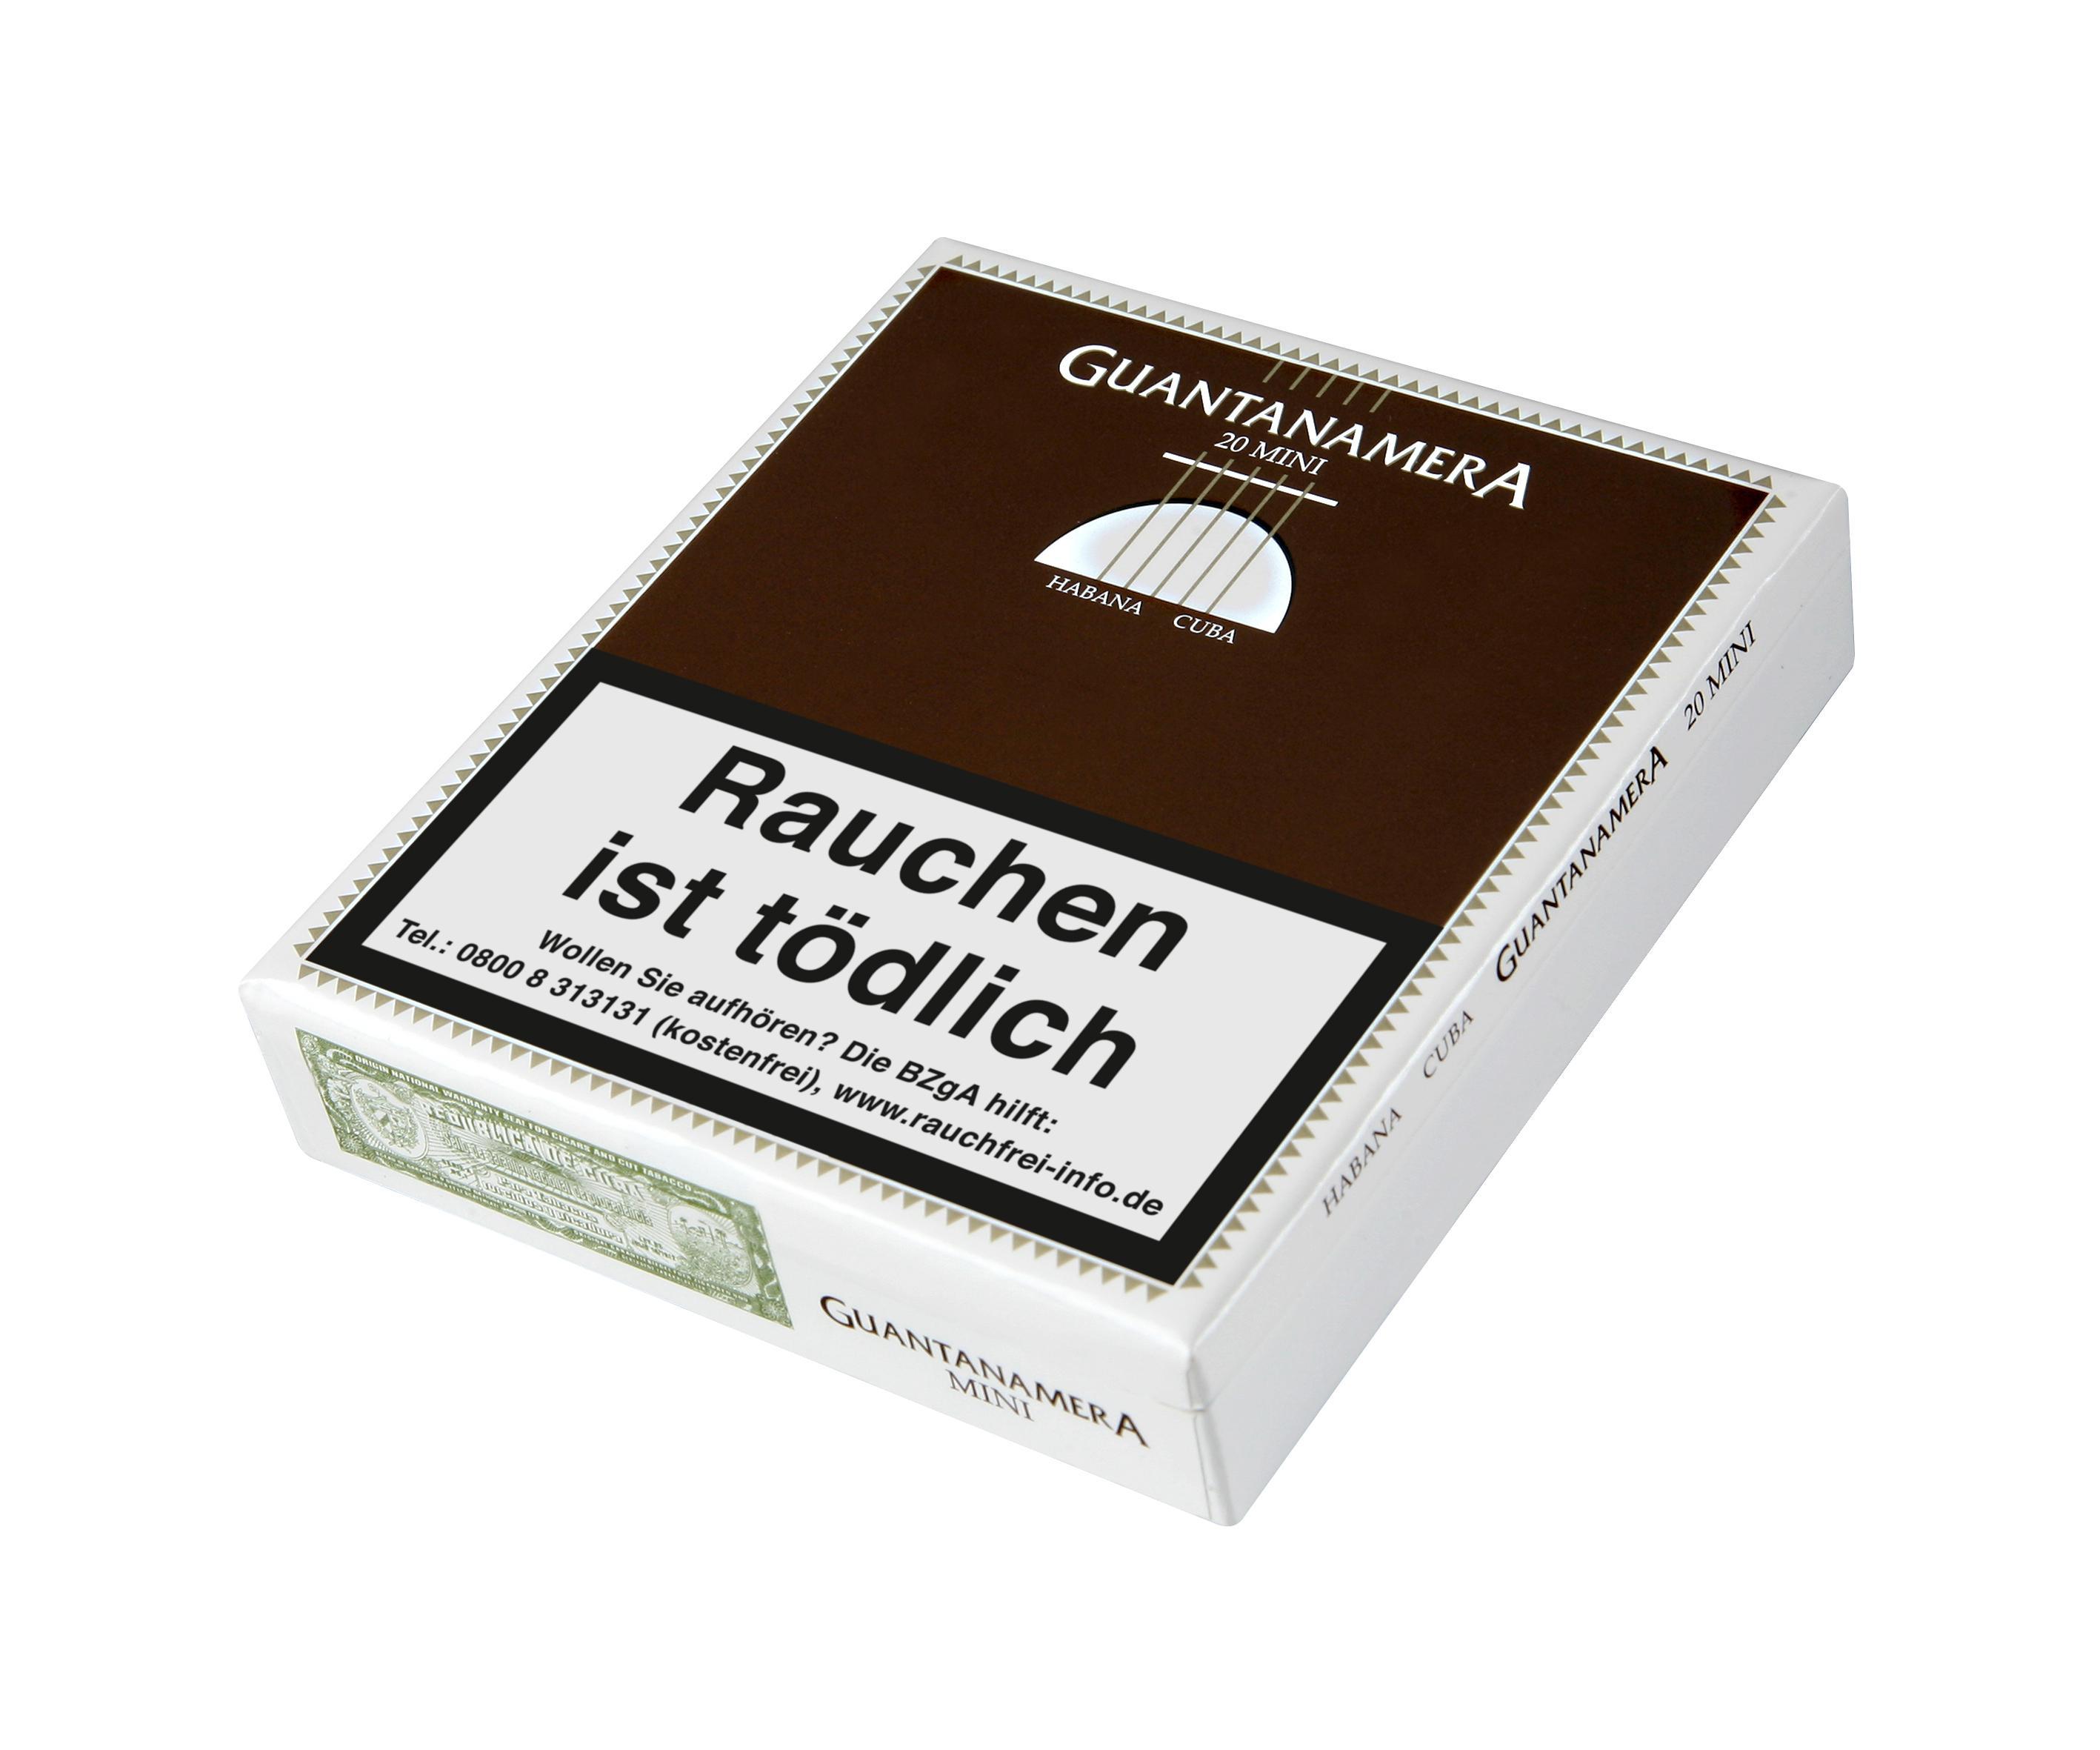 Guantanamera Mini 1 x 20 Zigarren